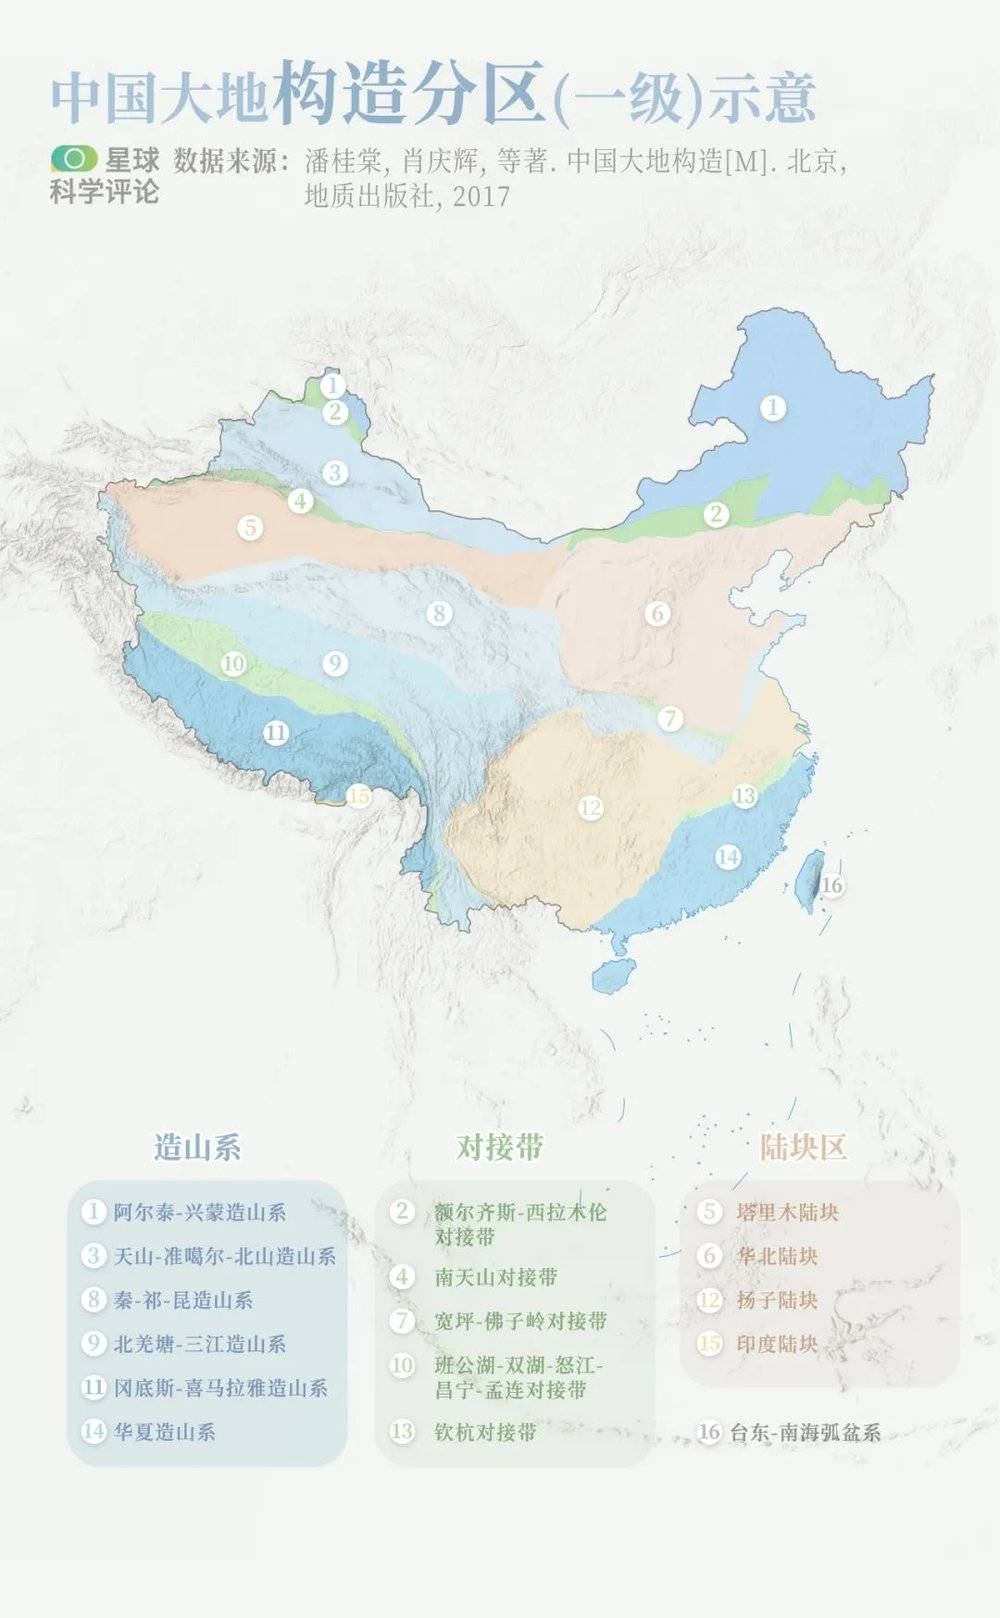 中国大地构造分区（一级）示意图 | 中国的陆地区域可以分为16个大地构造单元。制图@陈随&陈志浩/星球科学评论<br>